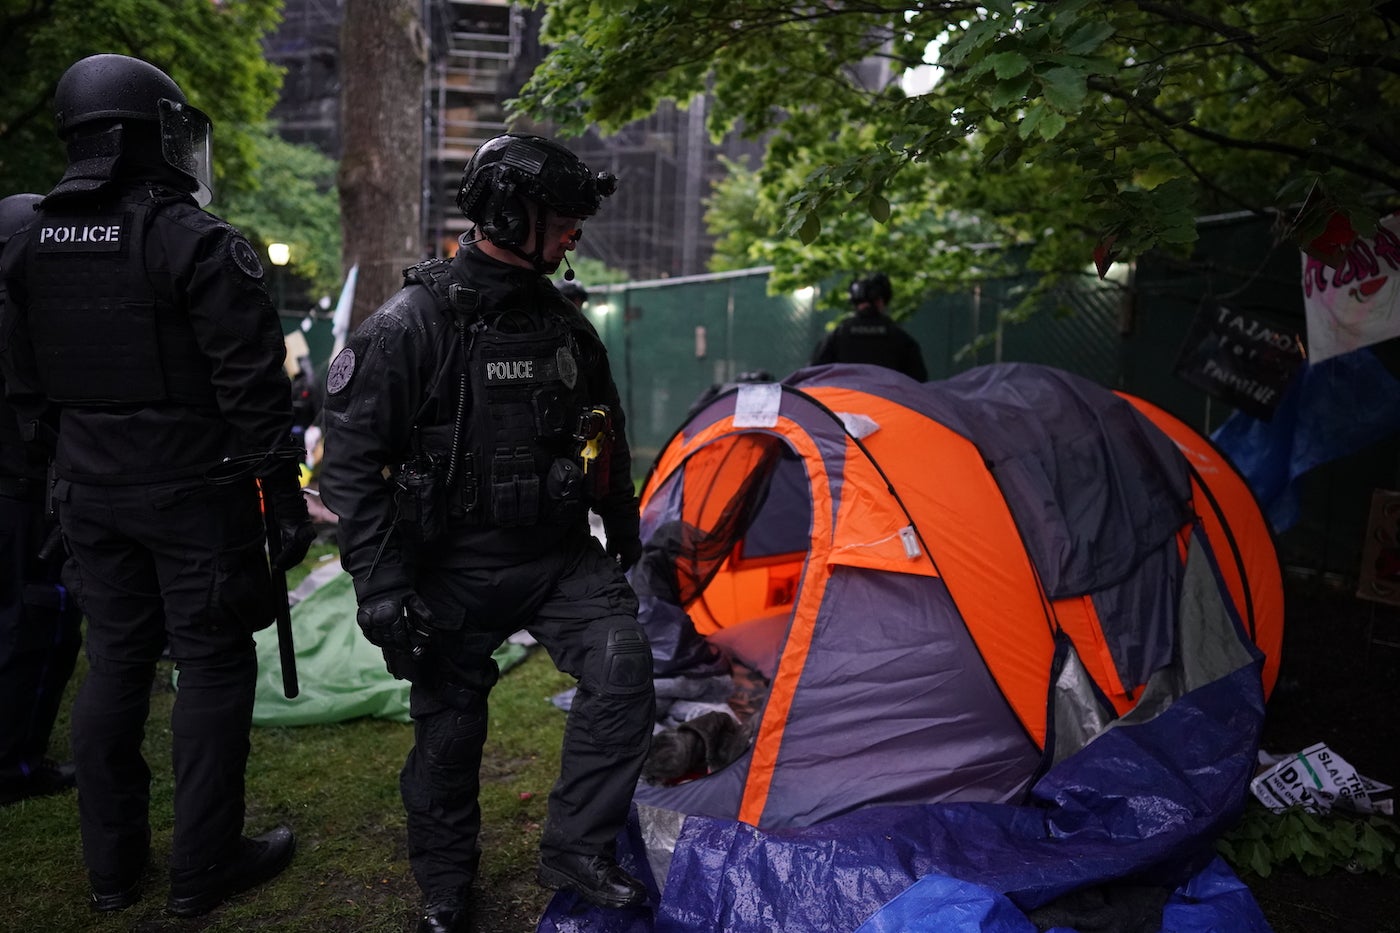 University of Pennsylvania bans on-campus encampments